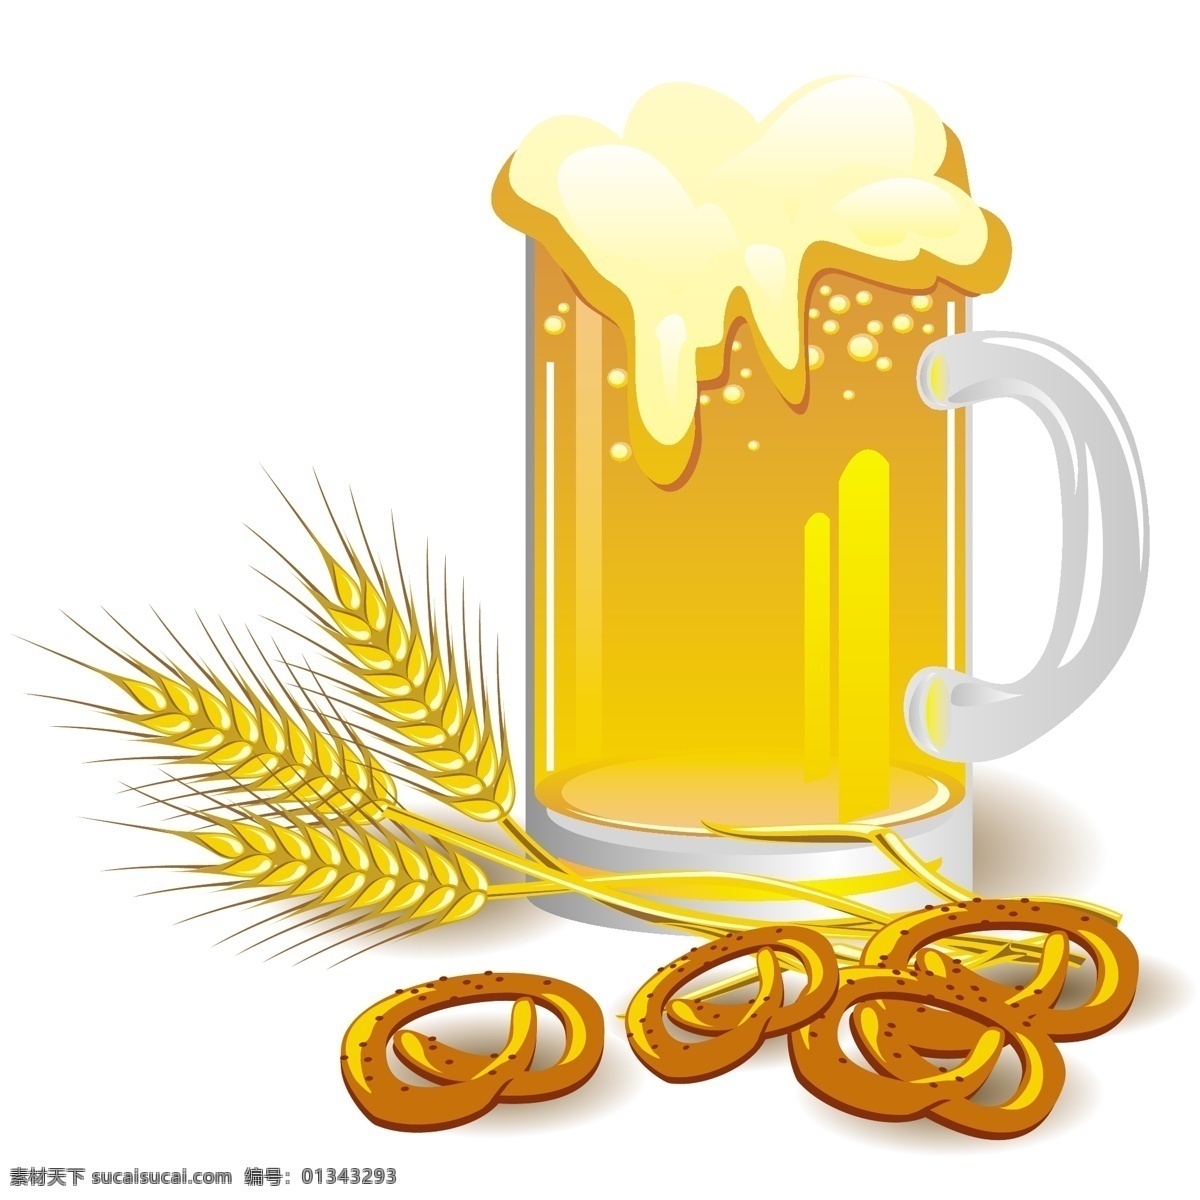 矢量 啤酒 泡沫 饮品 啤酒杯 矢量素材 小麦 饮料 矢量图 其他矢量图